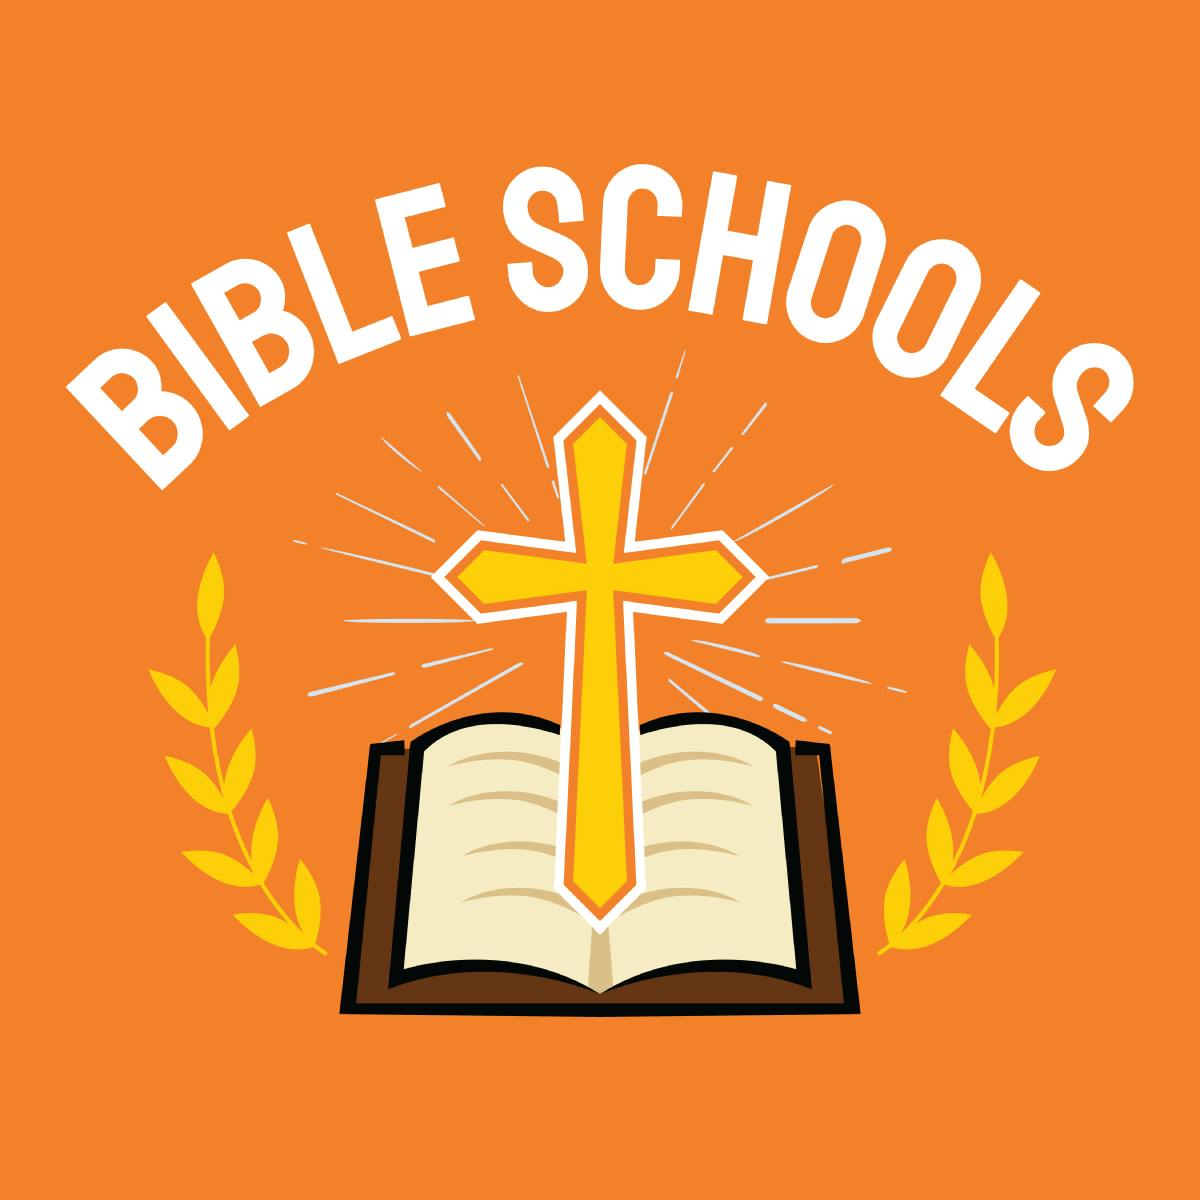 Bible School